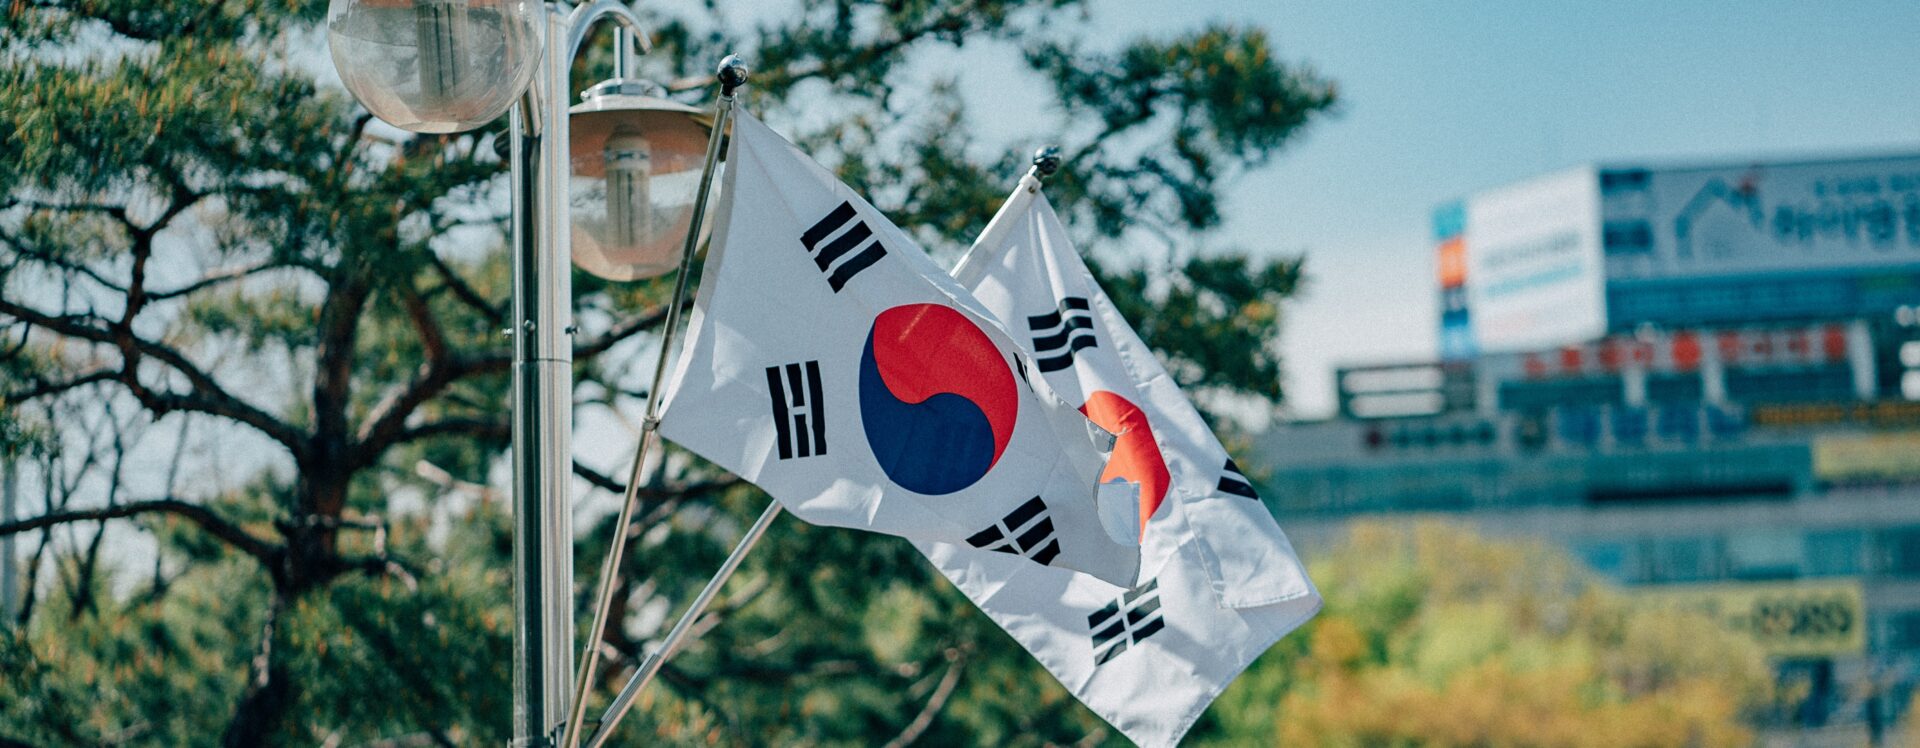 bandeira da coreia do sul hasteada em um mastro.